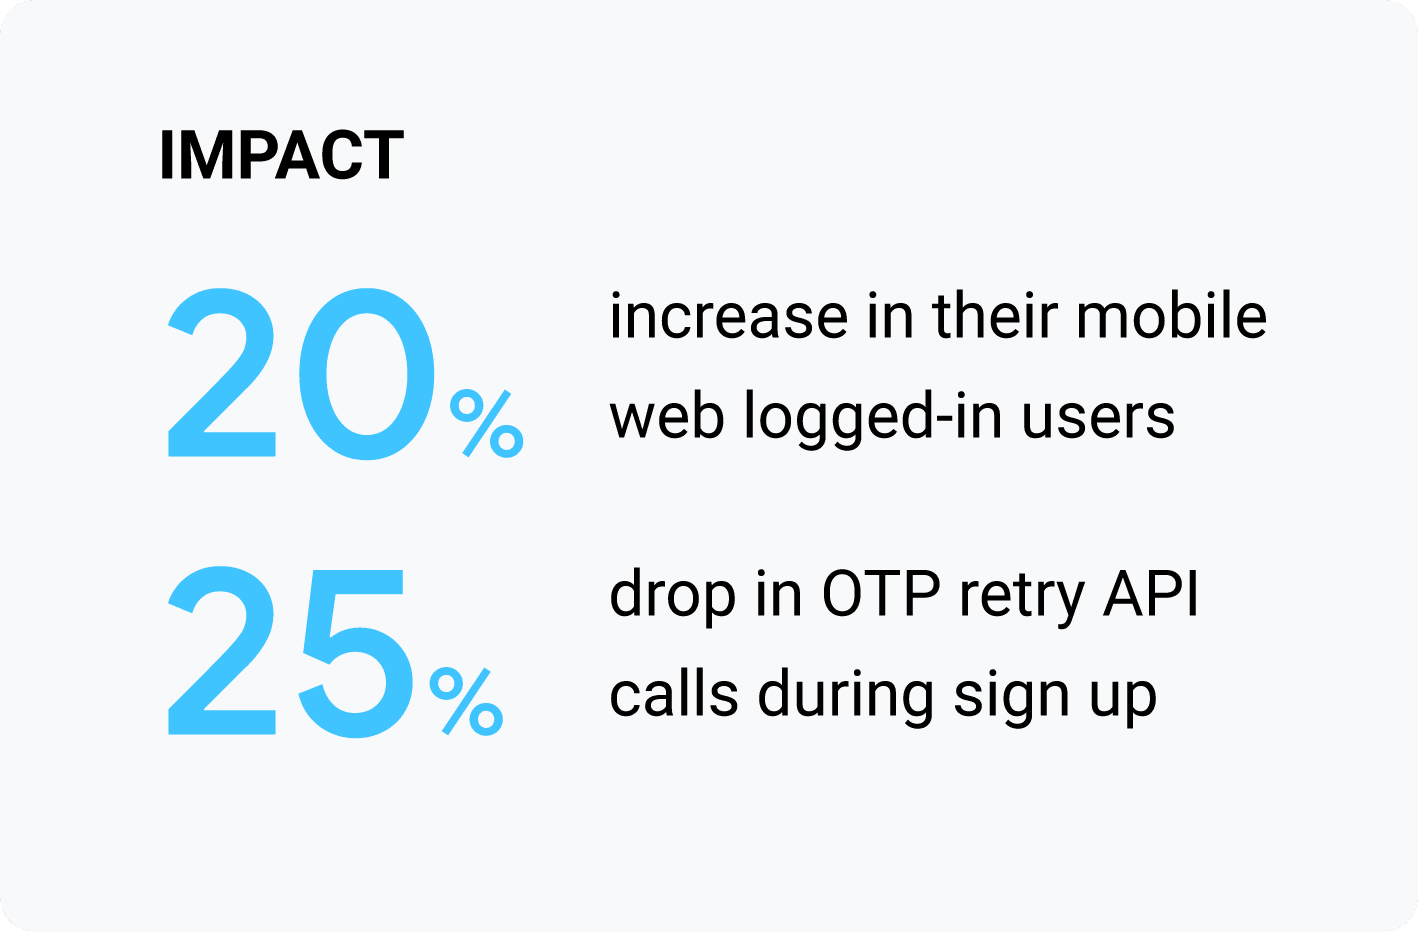 ผลกระทบ: ผู้ใช้ที่ลงชื่อเข้าสู่ระบบเว็บบนอุปกรณ์เคลื่อนที่เพิ่มขึ้น 20% และการเรียก API สำหรับพยายามใช้ OTP ลดลง 25% ระหว่างการลงชื่อสมัครใช้